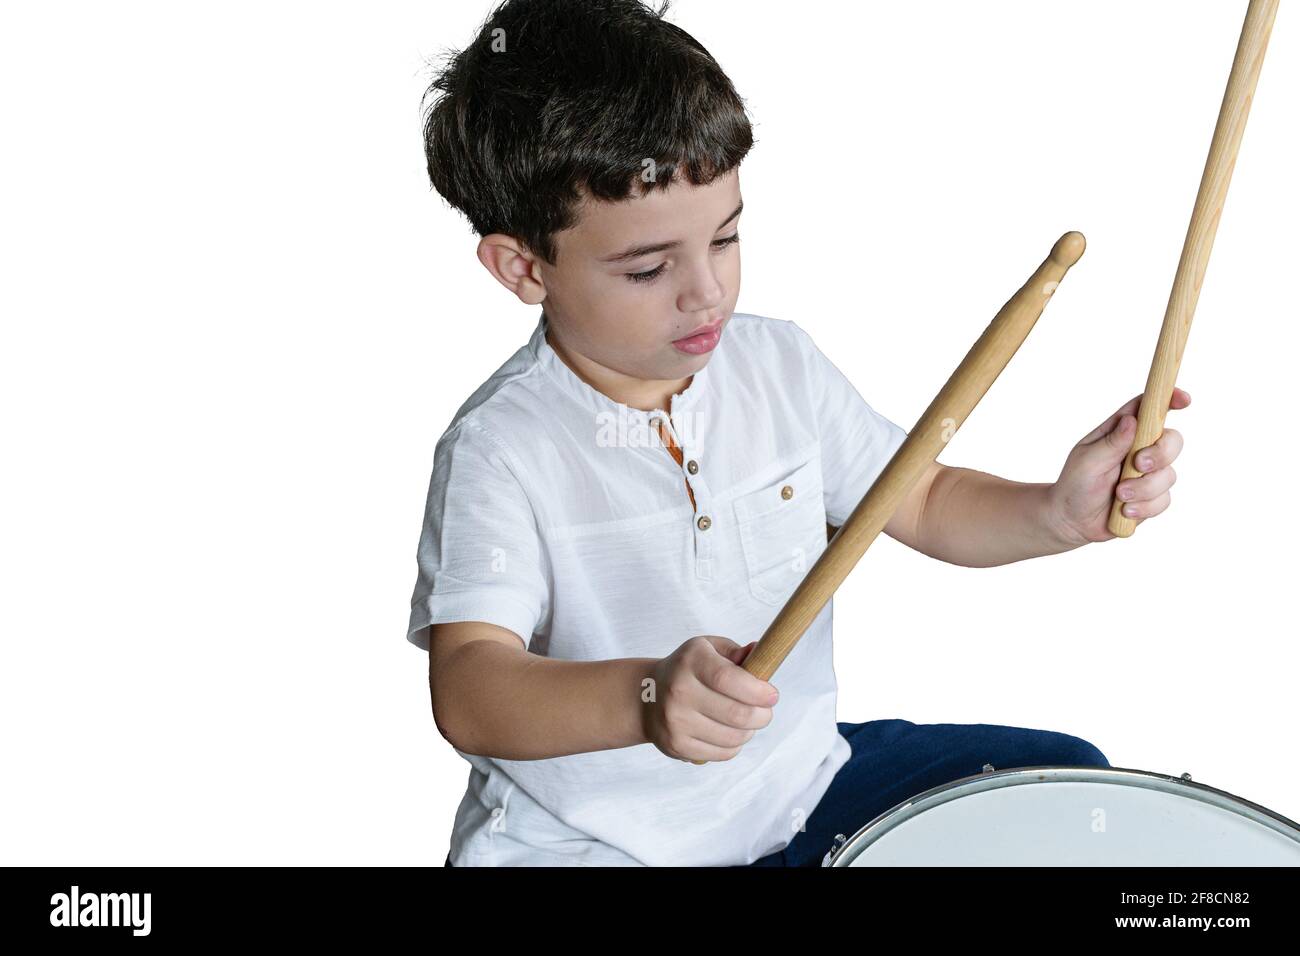 7-jähriges Kind mit seinen Dumsticks, die bereit sind, Schlagzeug zu spielen. Weißer Hintergrund. Stockfoto